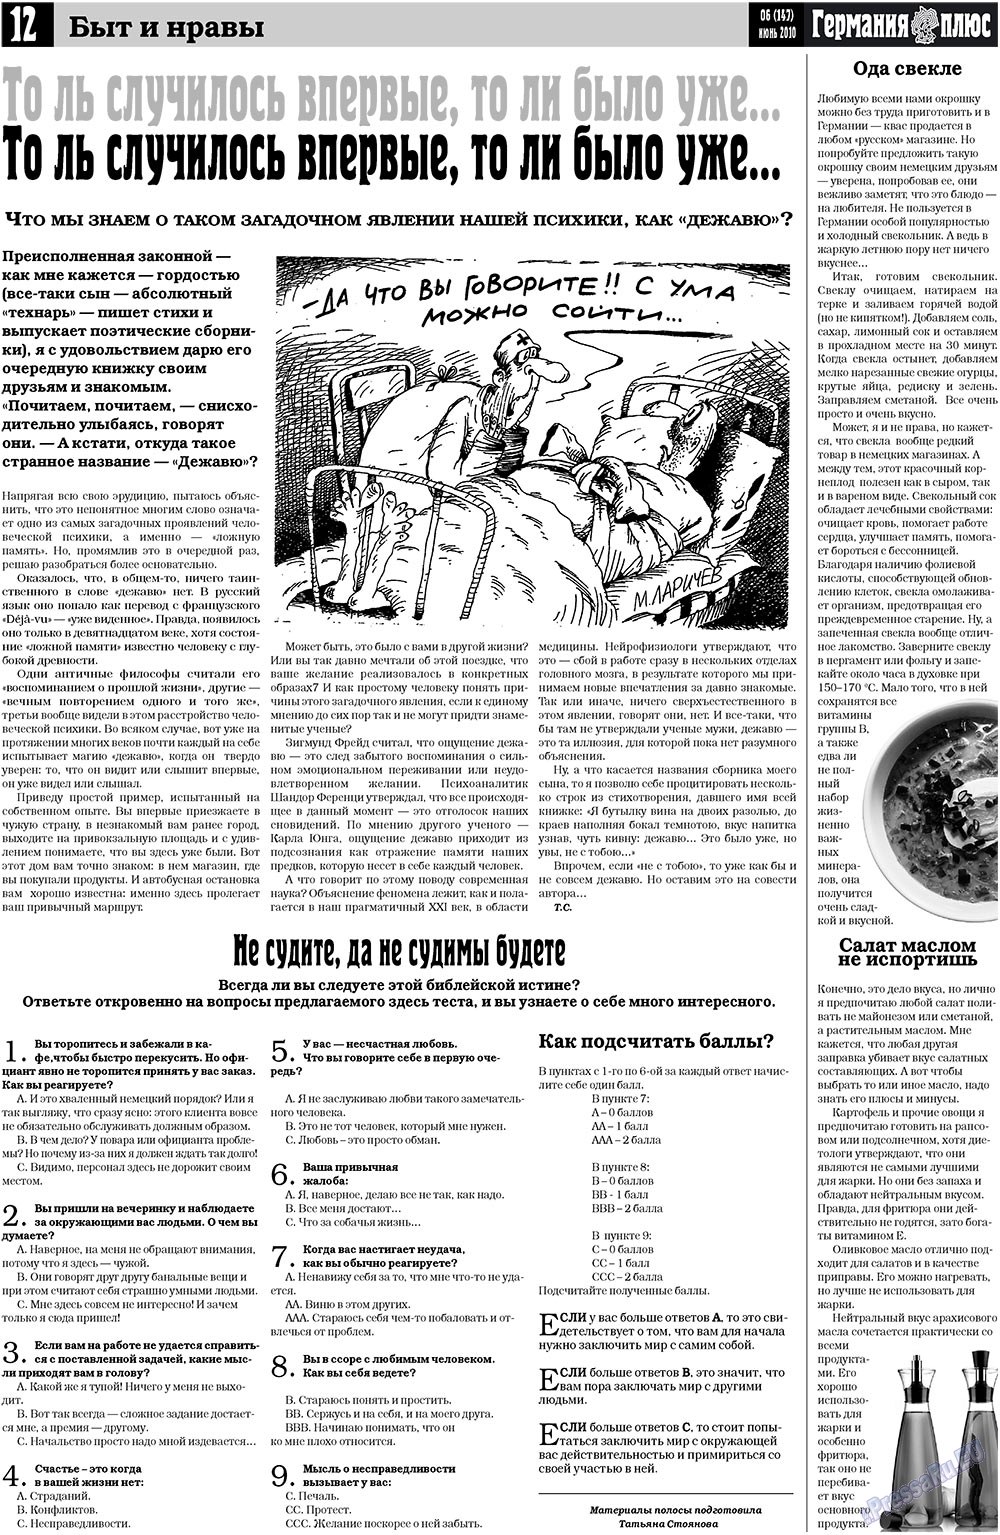 Германия плюс, газета. 2010 №6 стр.12